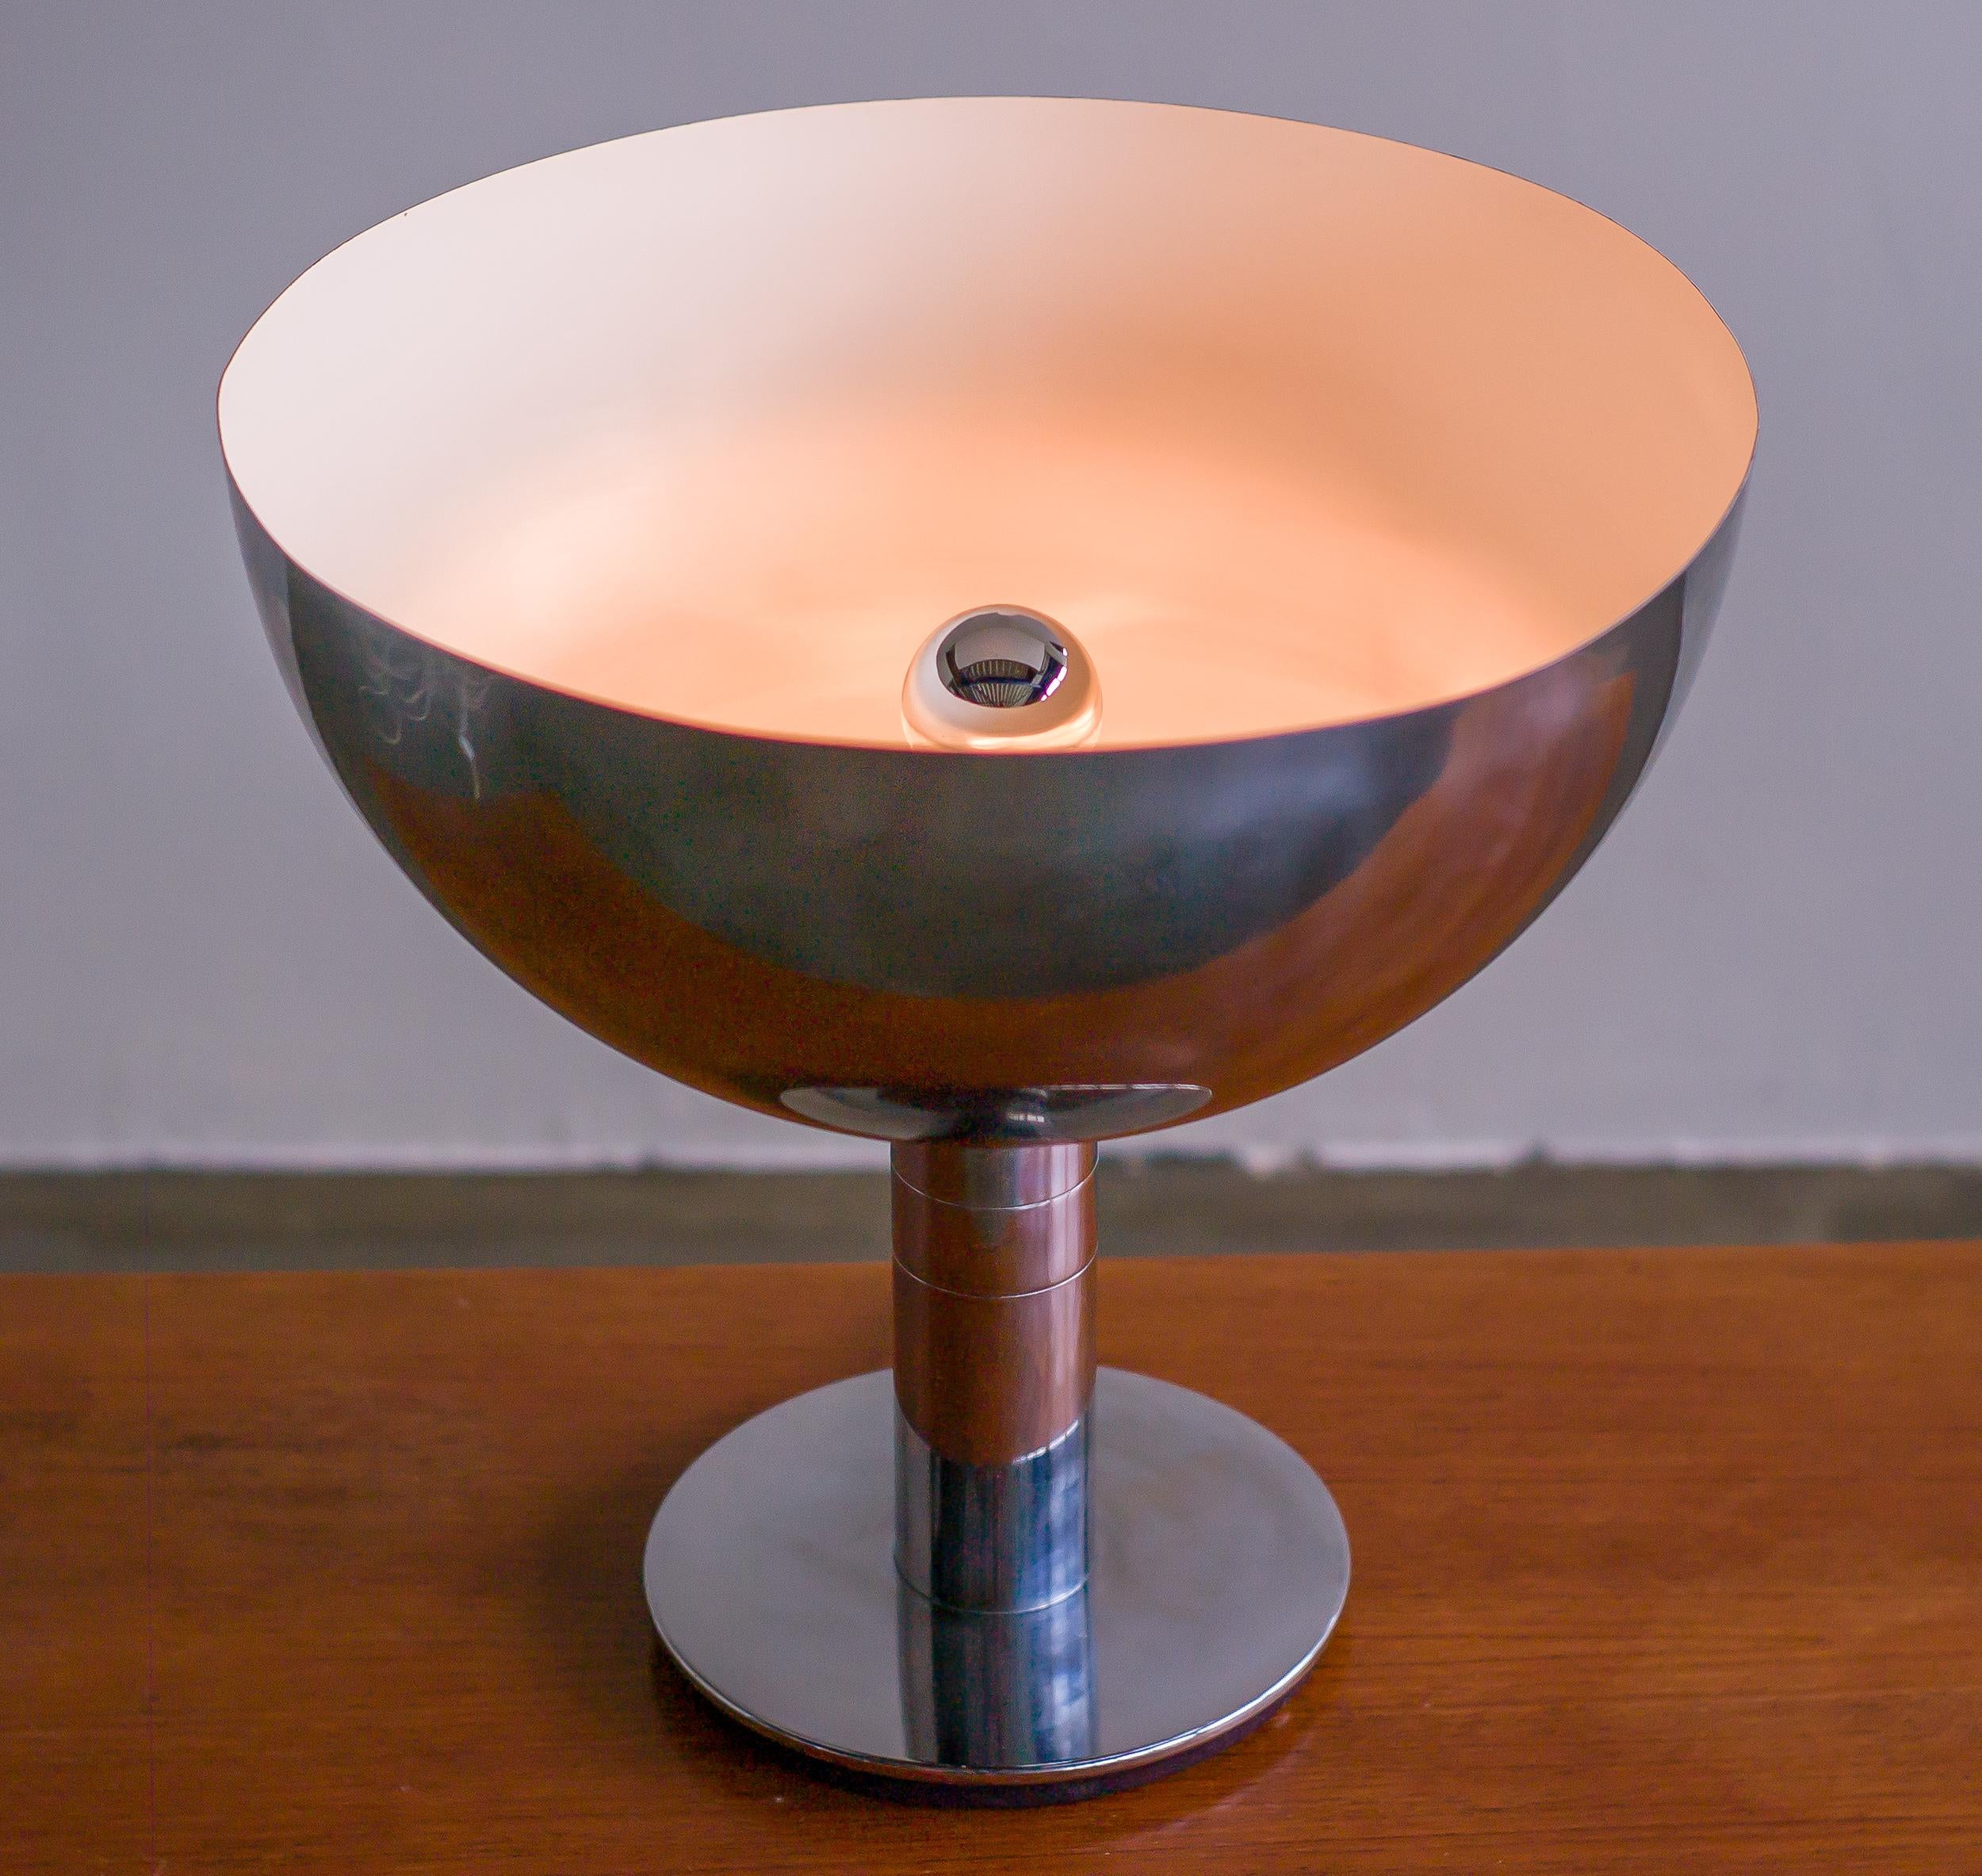 Cette lampe de table chromée a été conçue en Italie par Franco Albini et Franca Helg pour Sirrah en 1969. 
Il s'agit d'une version originale très ancienne. Le luminaire est fabriqué en acier chromé et peint et reste dans un bon état général vintage.